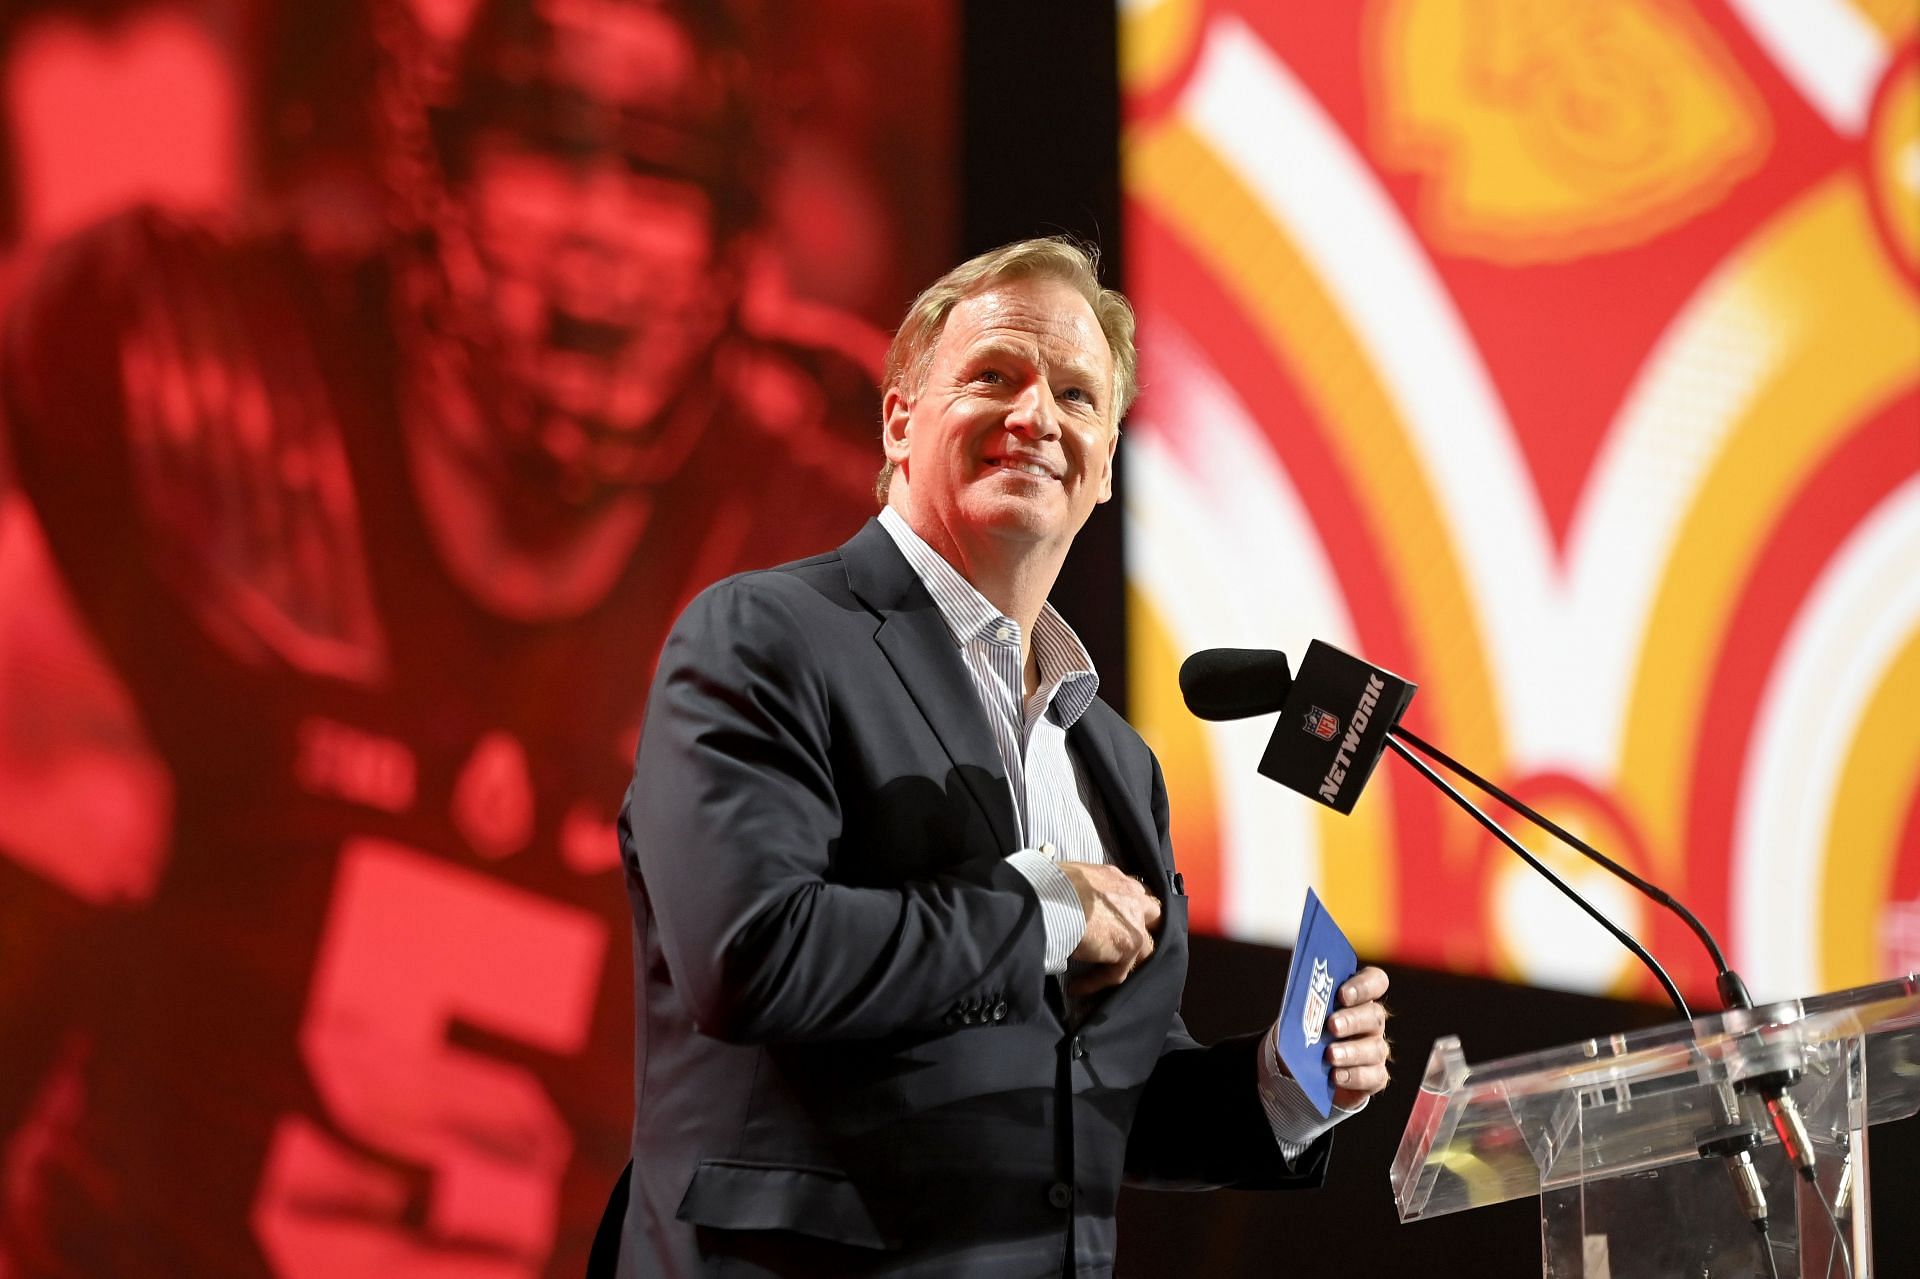 2022 NFL Draft - Round 1 - Commissioner Roger Goodell